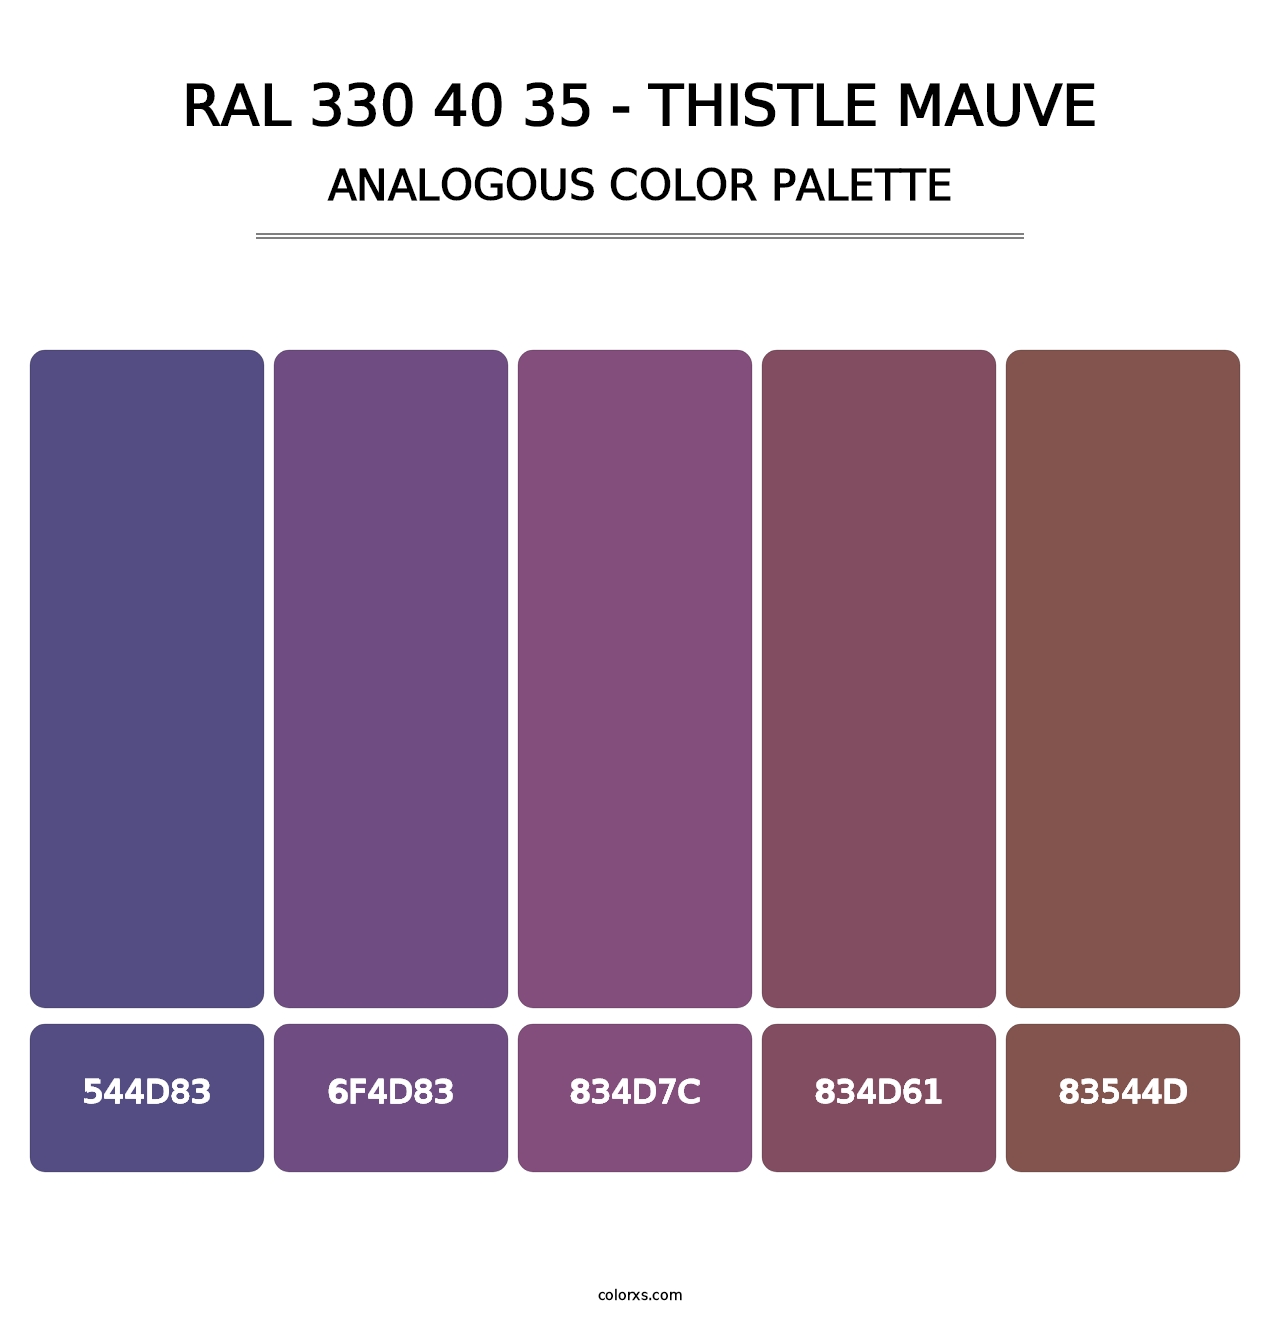 RAL 330 40 35 - Thistle Mauve - Analogous Color Palette